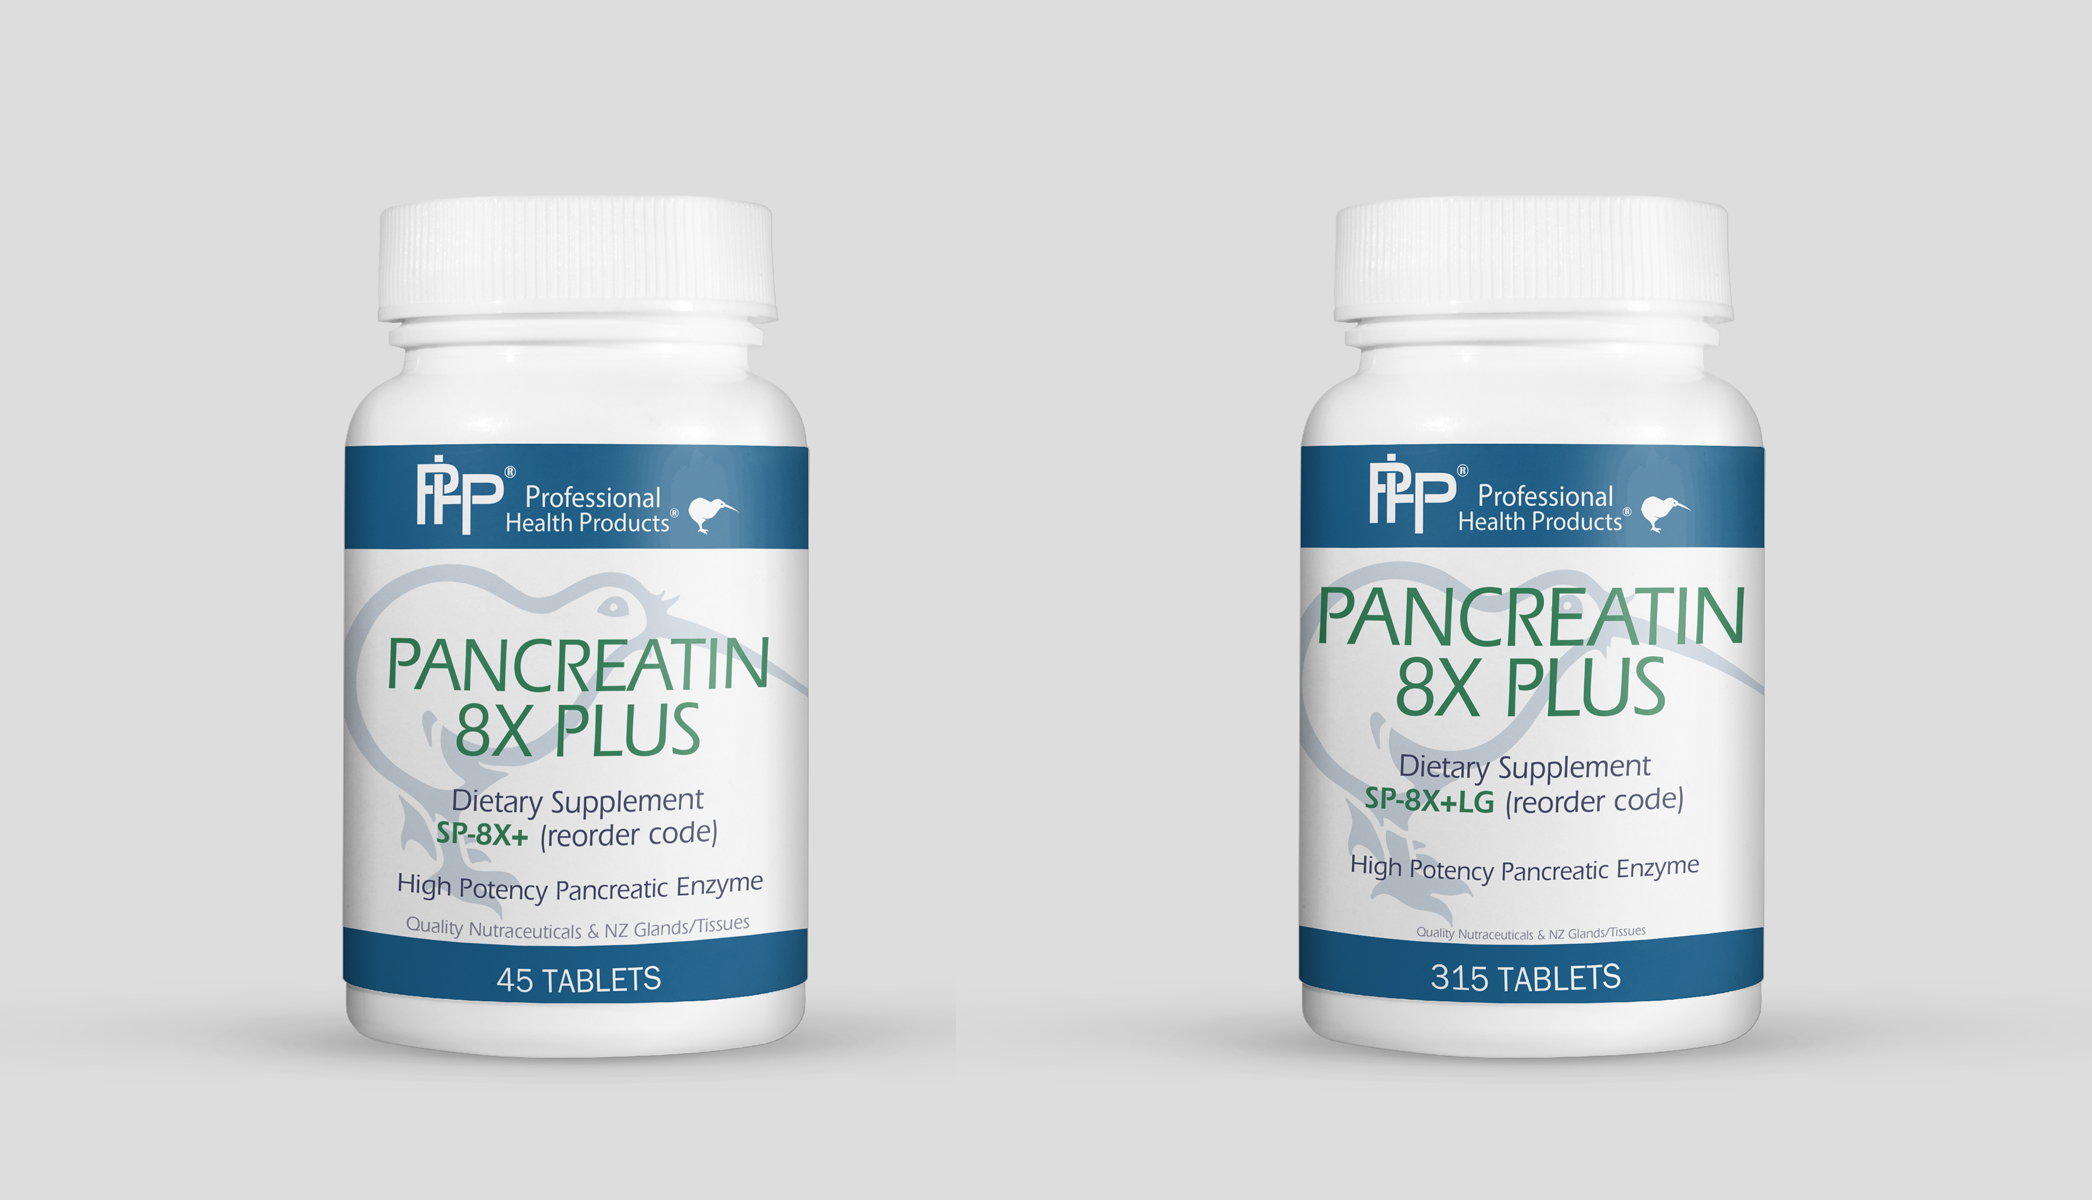 Pancreatin 8x Plus